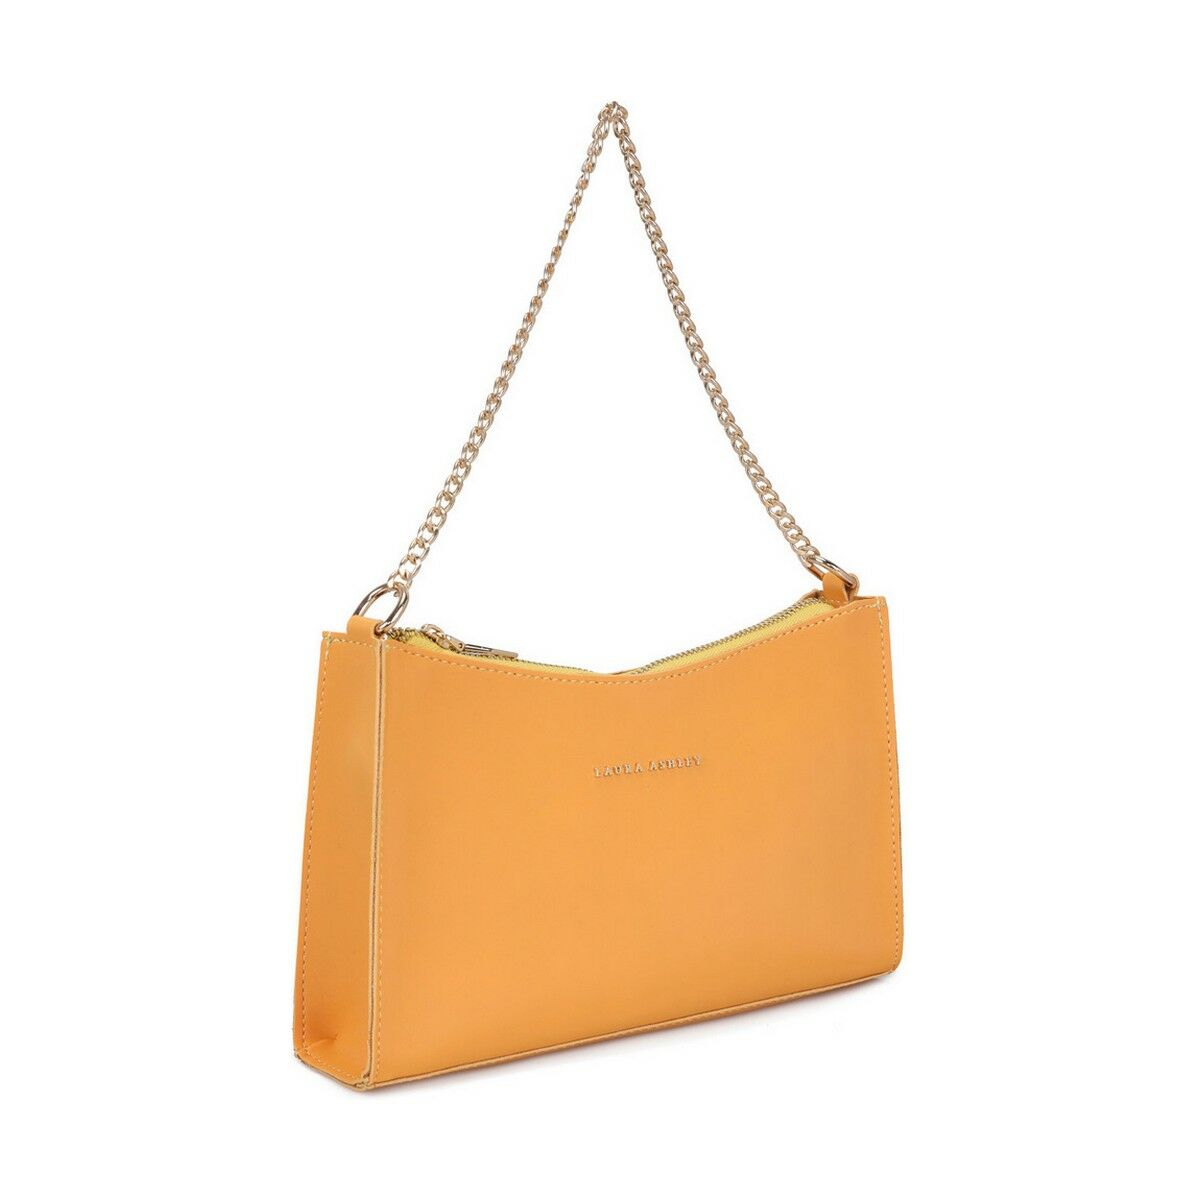 Damen Handtasche Laura Ashley CRAIG-YELLOW Gelb (25 x 16 x 6 cm)